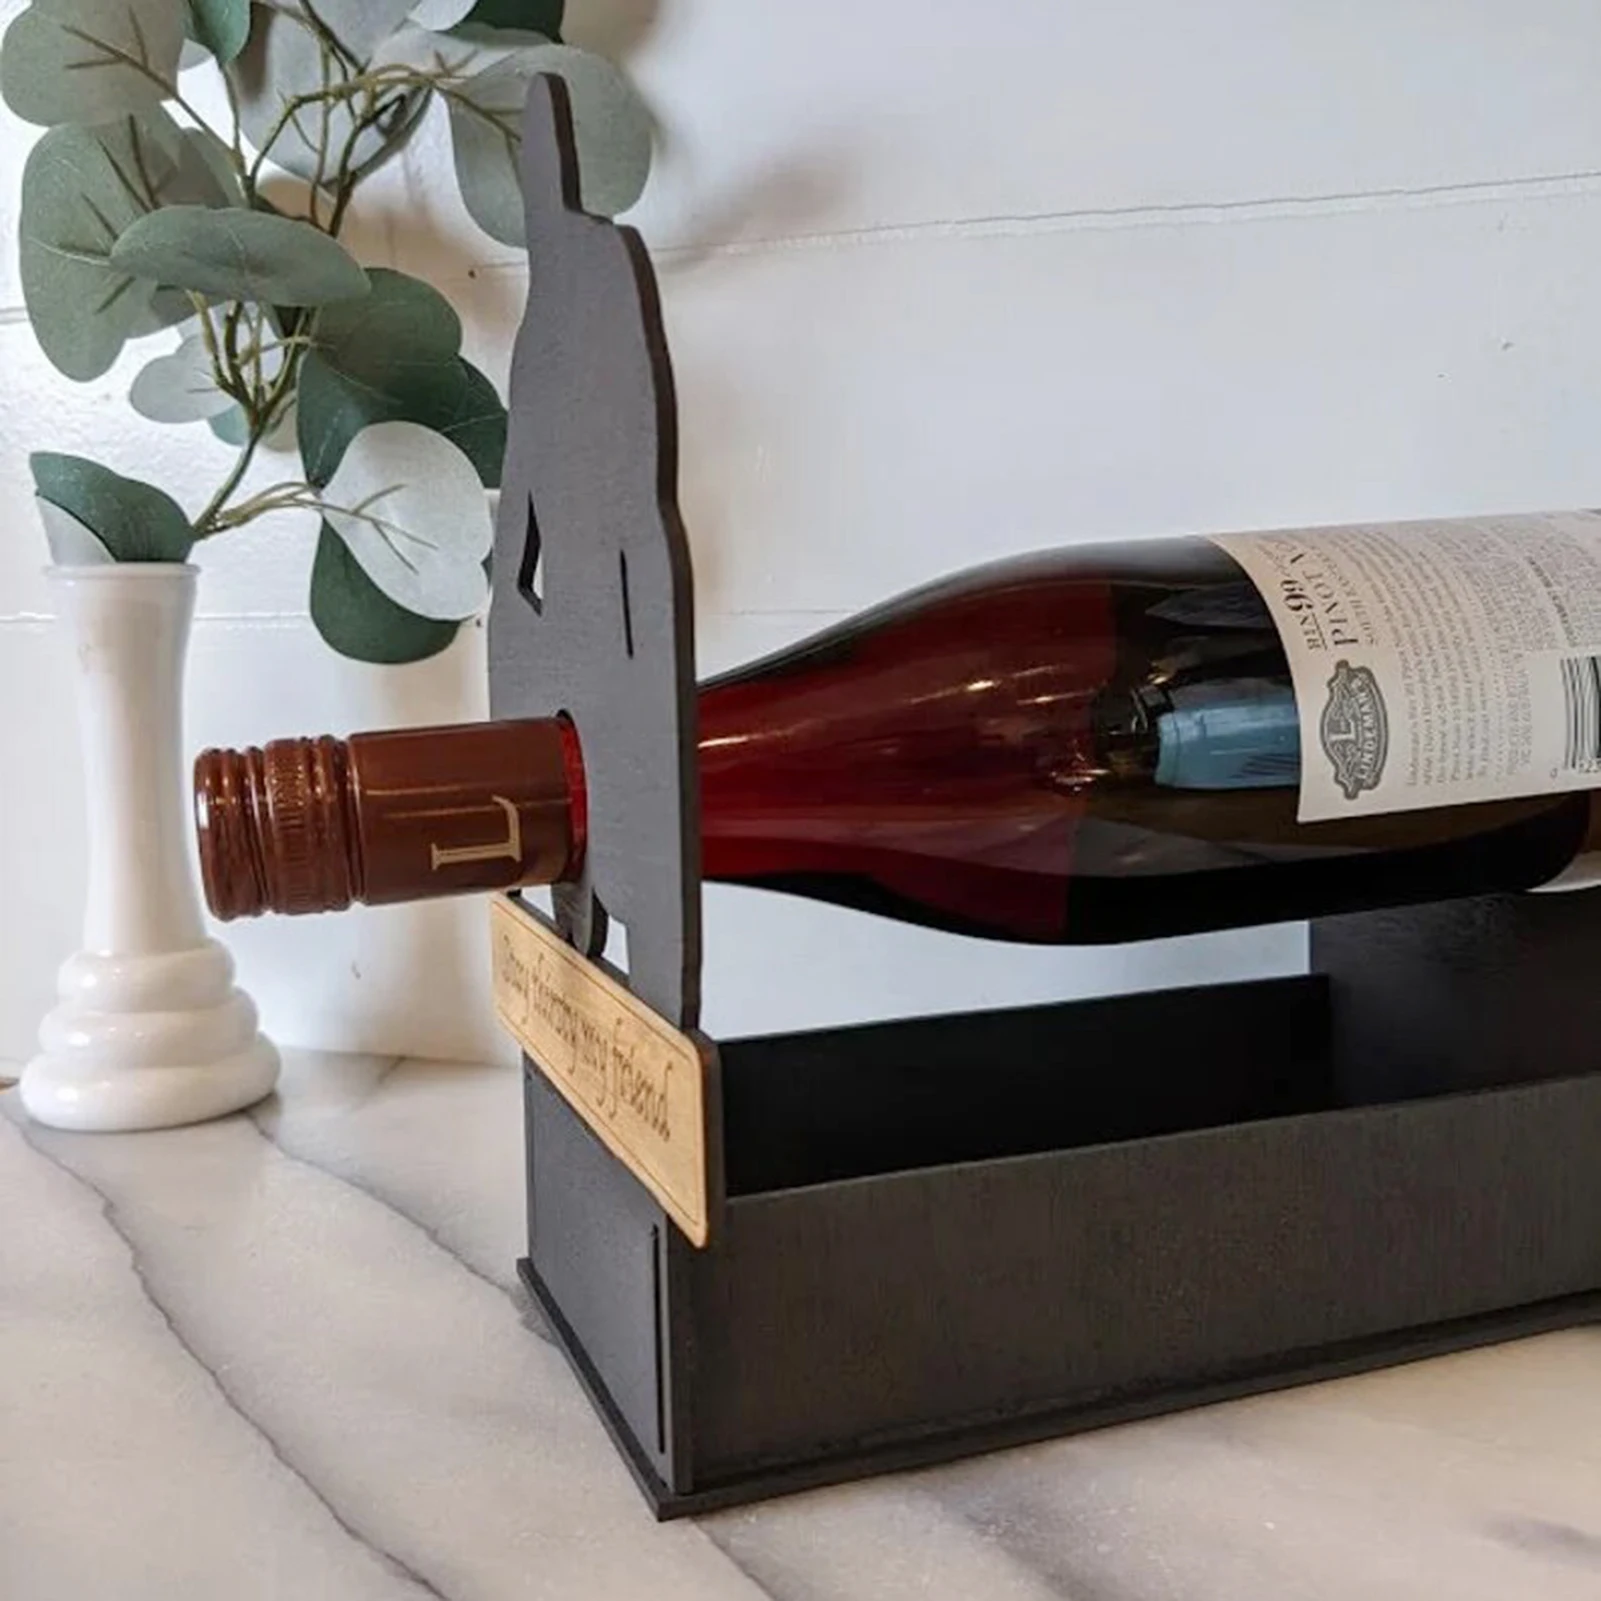 LIGHFOOT Wine Holder Red Wine Bottle Unique Metal Novelty Gift for Men Unique Kitchen Home Decoration 